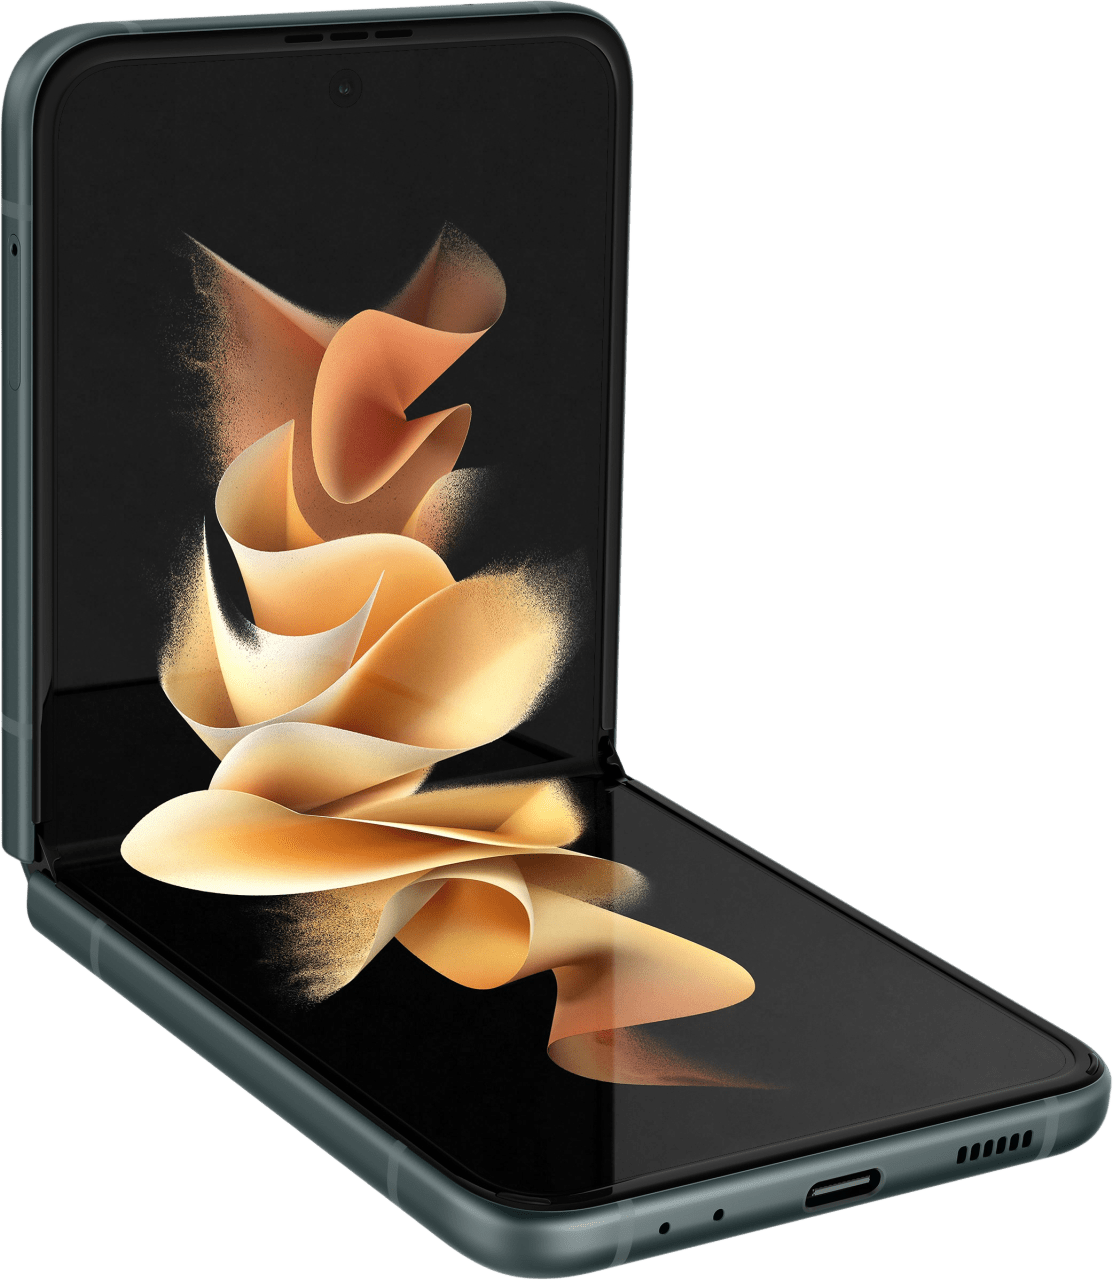 Grün Samsung Galaxy Z Flip 3 Smartphone - 128GB - Dual Sim.3